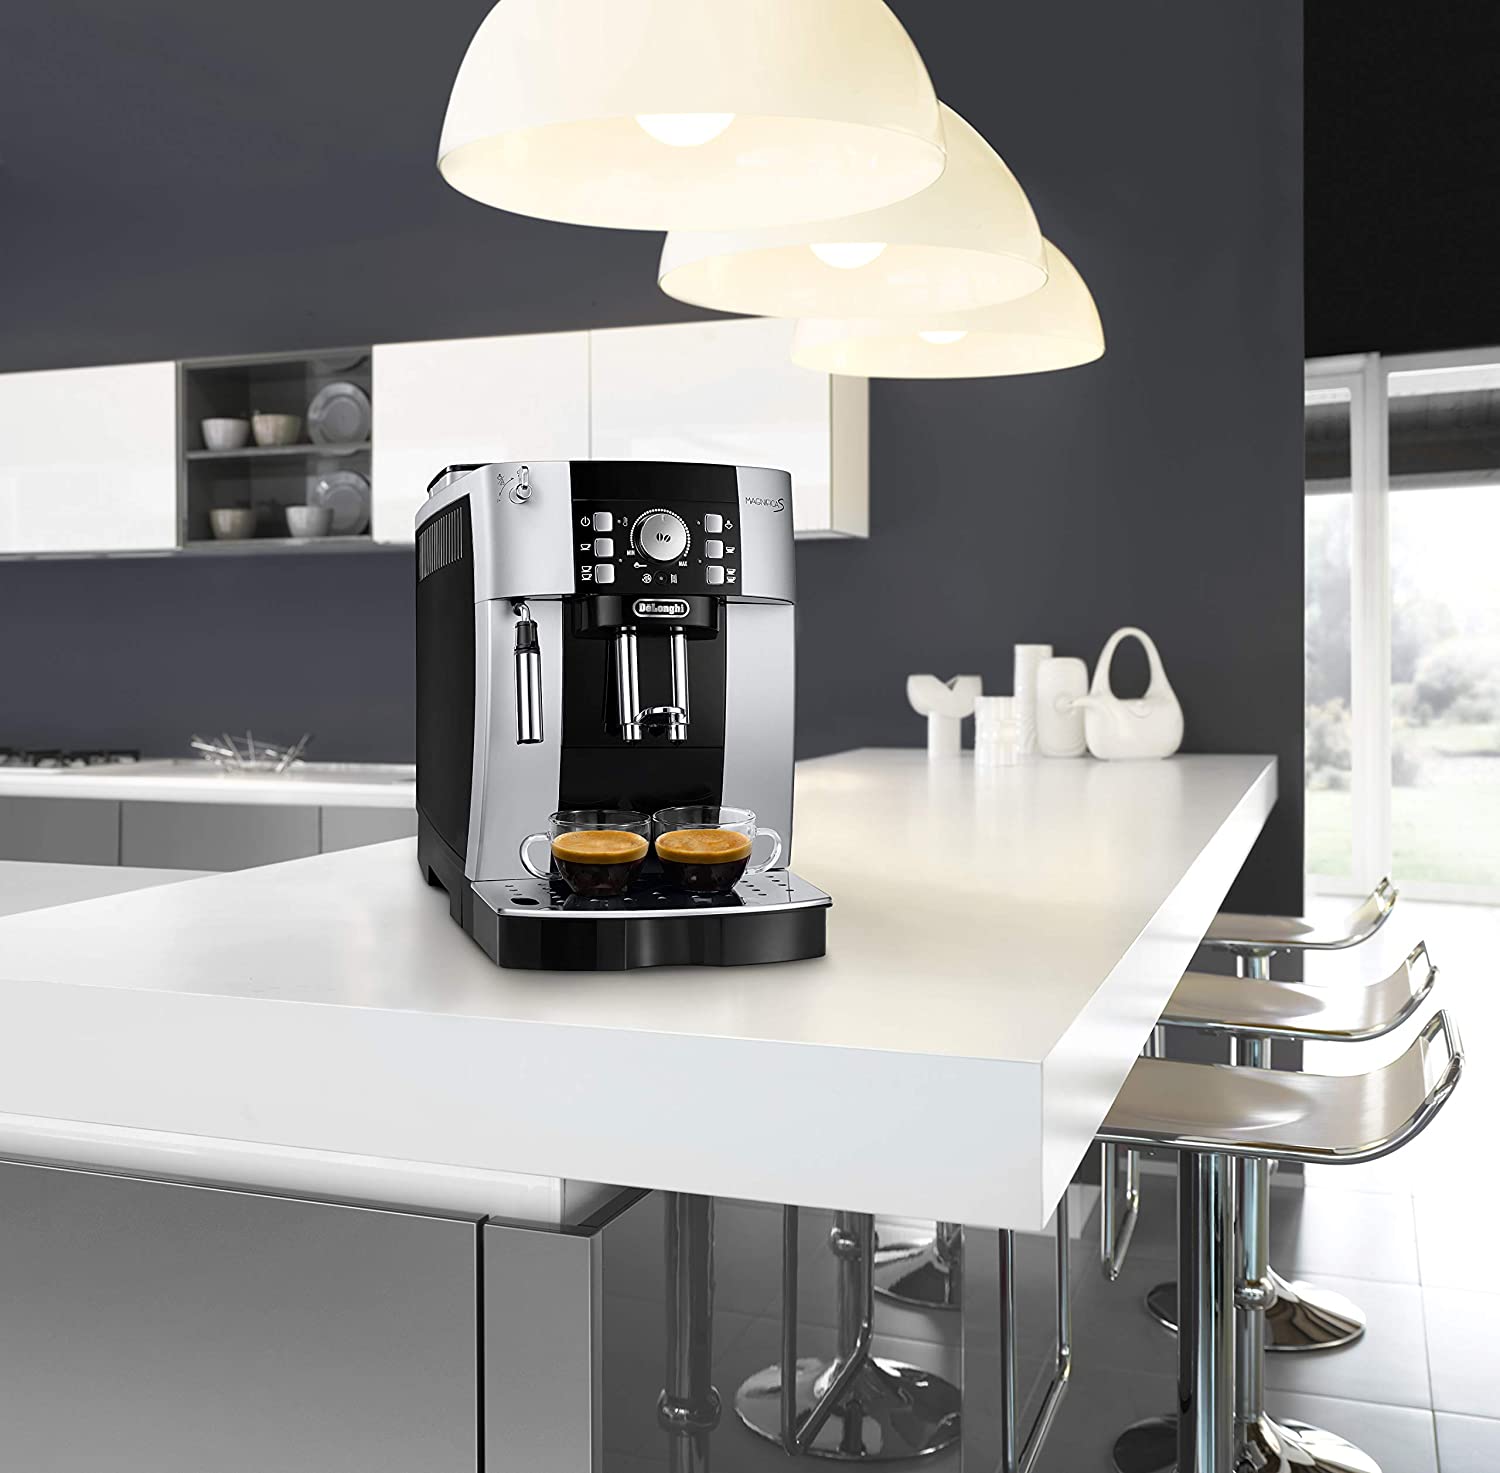 DeLonghi ECAM 21.116.B Coffee Machine Magnifica S (steam nozzle), Coffee machine